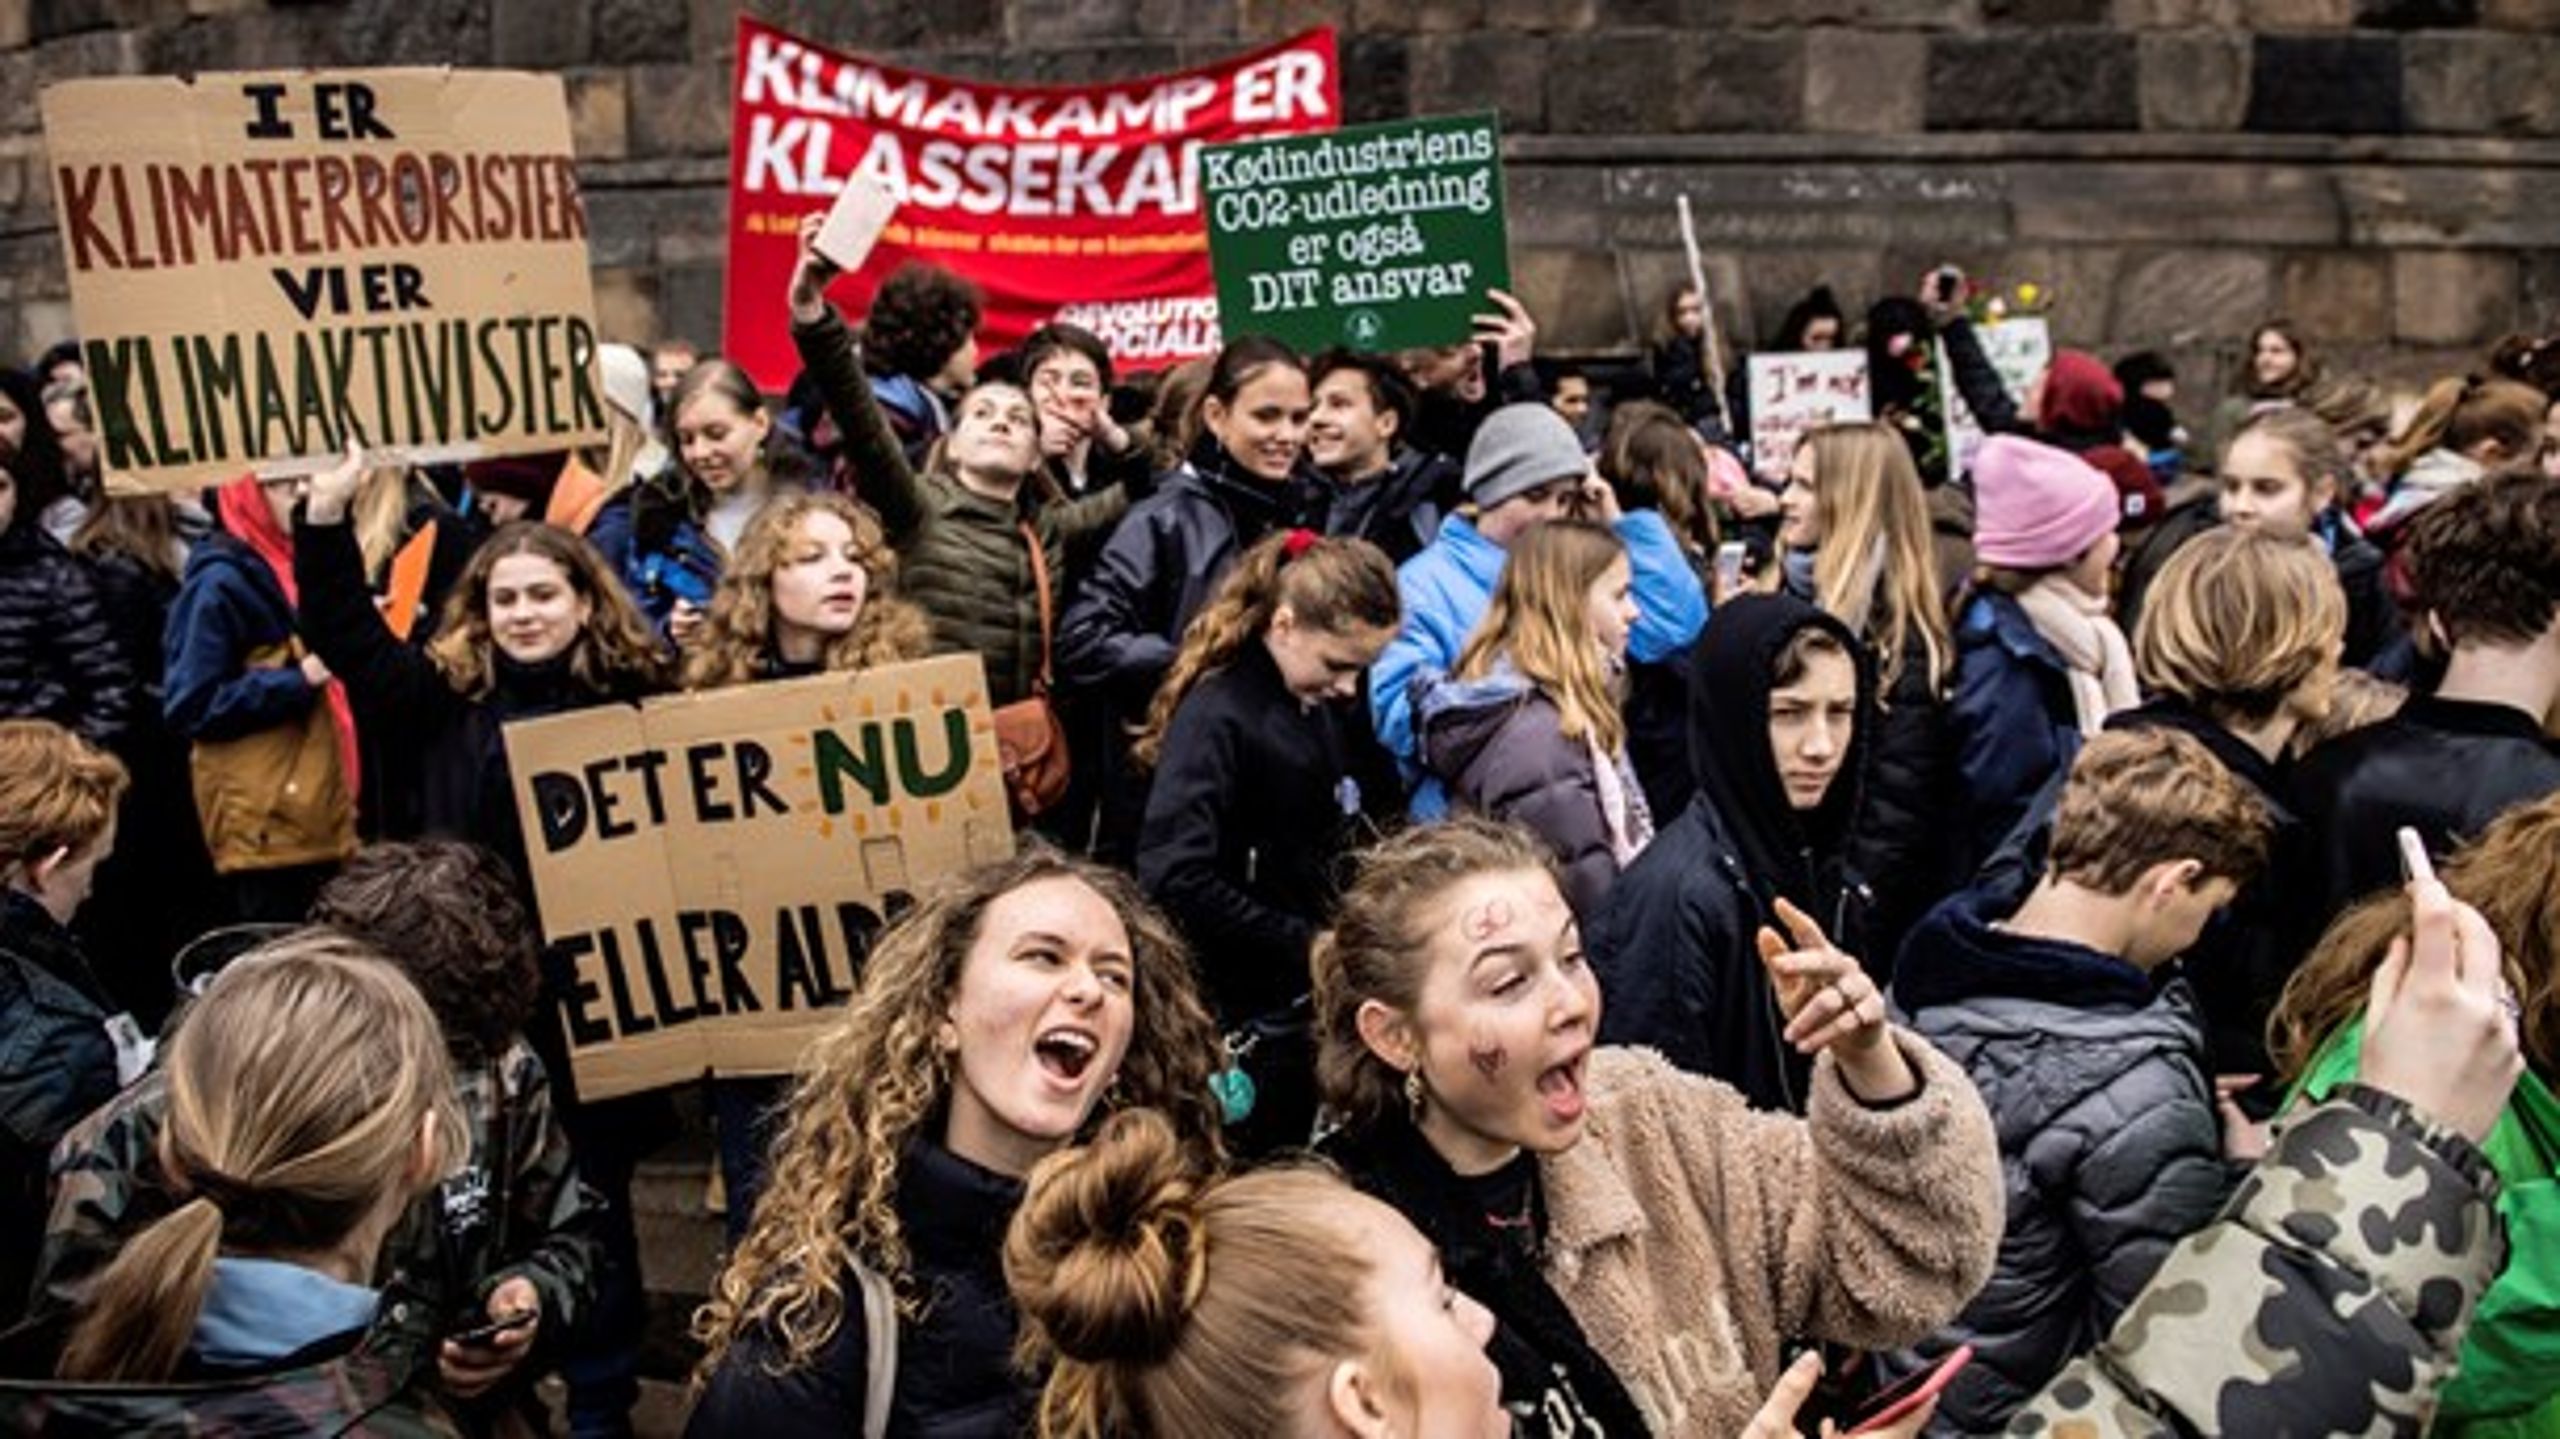 Aktivismen lever i bedste velgående i klimabevægelsen, og det kan forhåbentligt&nbsp;inspirere menneskerettighedsforkæmperne, mener Asger Kjærum.